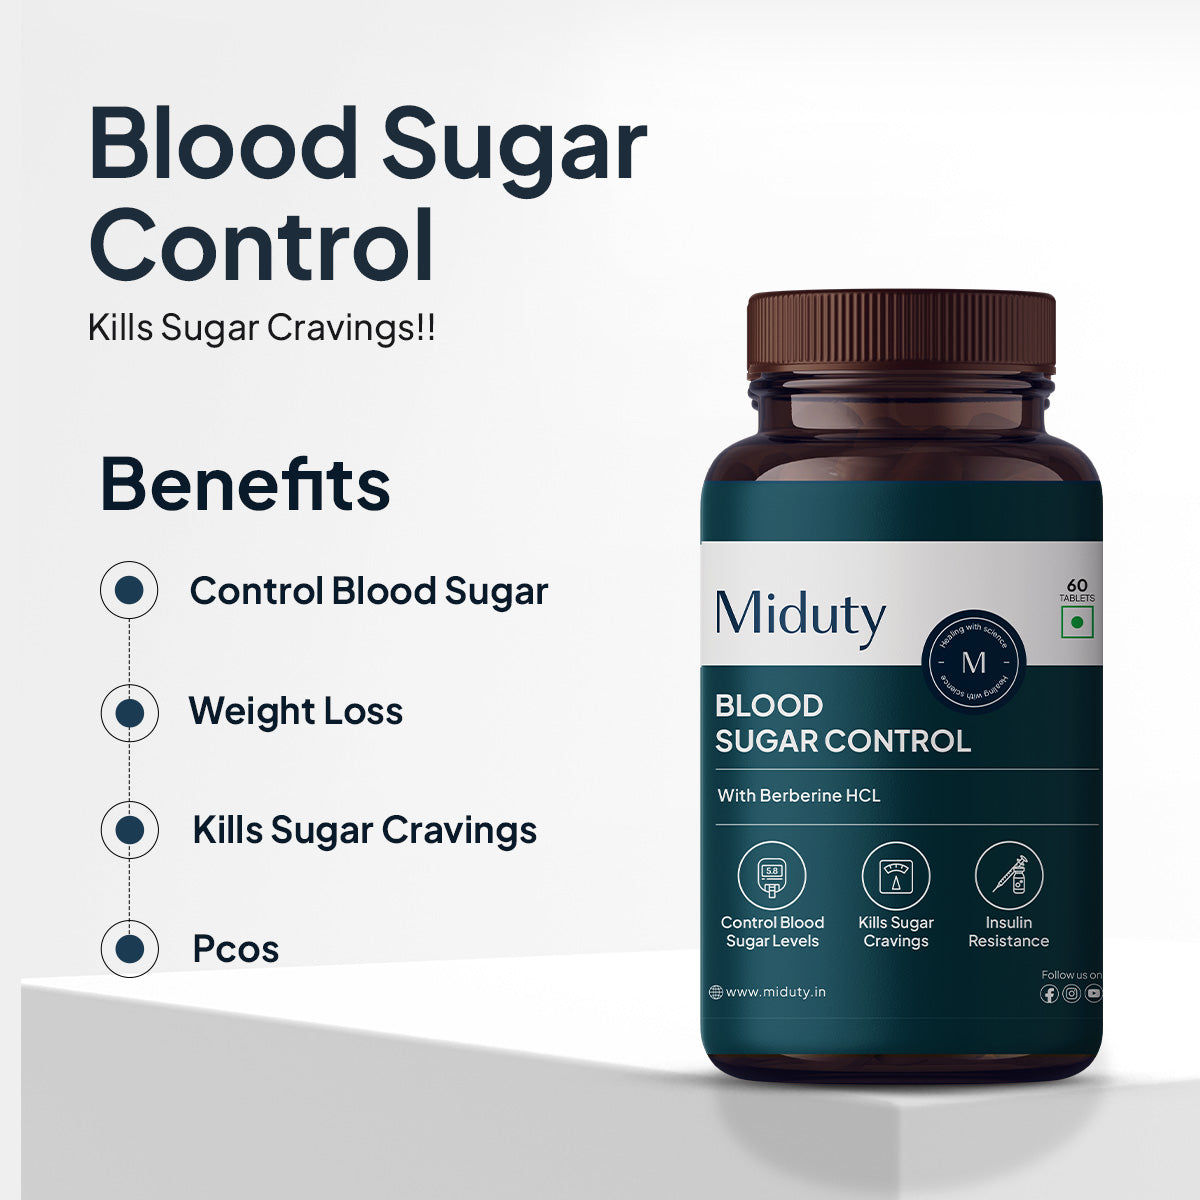 Blood Sugar Control